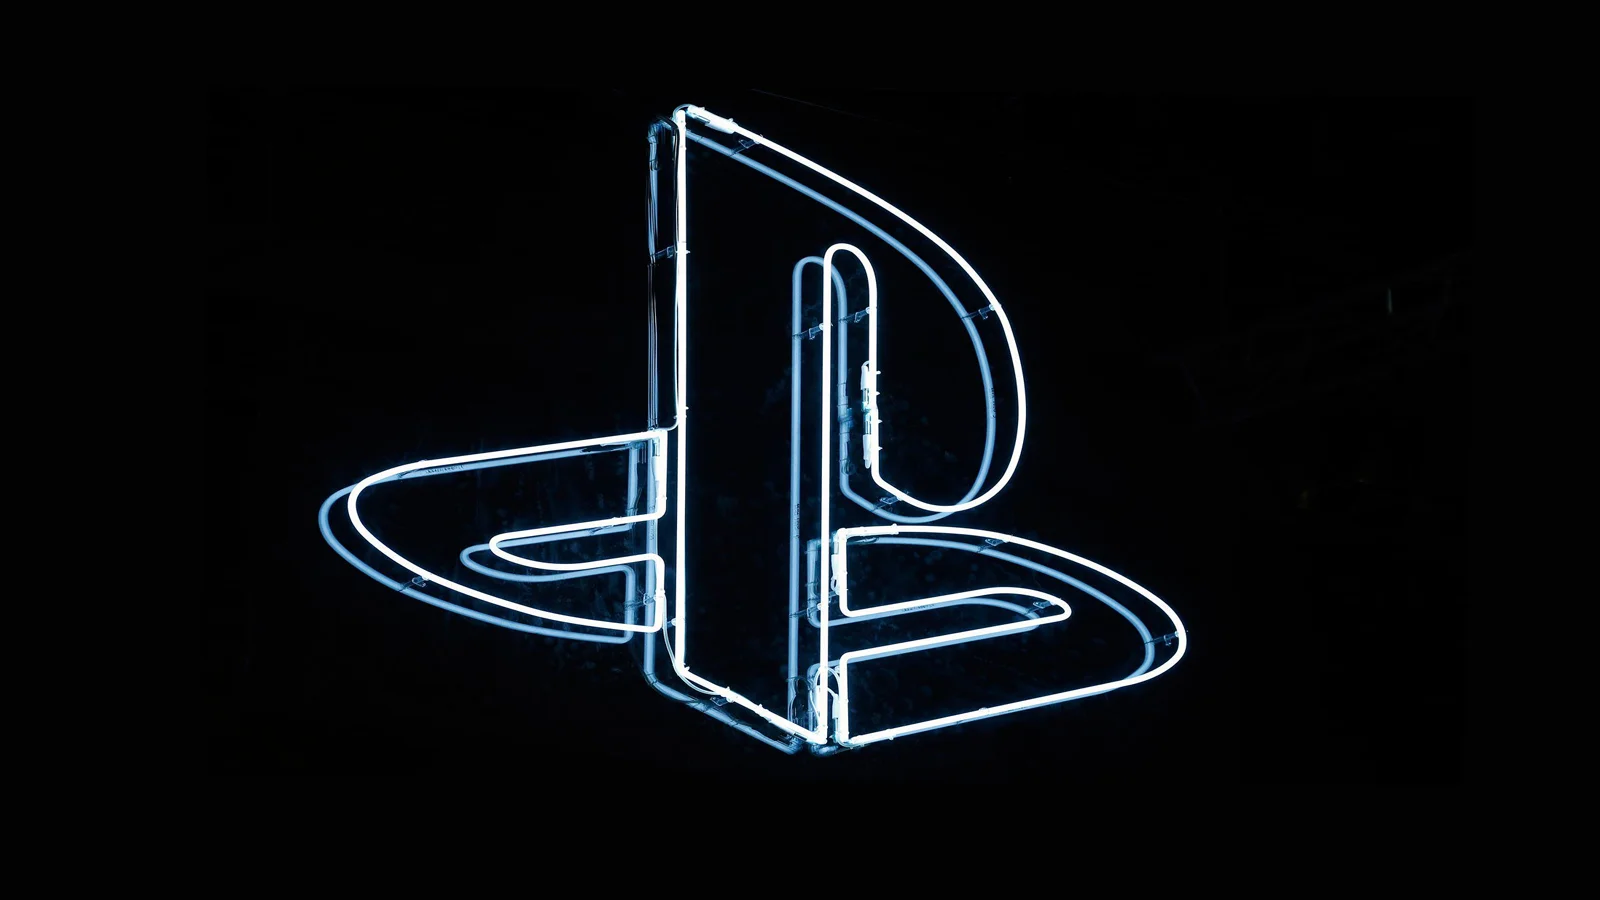 Sony официально объявила, что консоль следующего поколения PS5 выйдет в конце 2020 года. До релиза новинки остался год, но в сети много слухов, догадок и реально подтвержденной информации о возможностях будущей игровой приставки. Собрали в одном месте все, что известно о PlayStation 5.